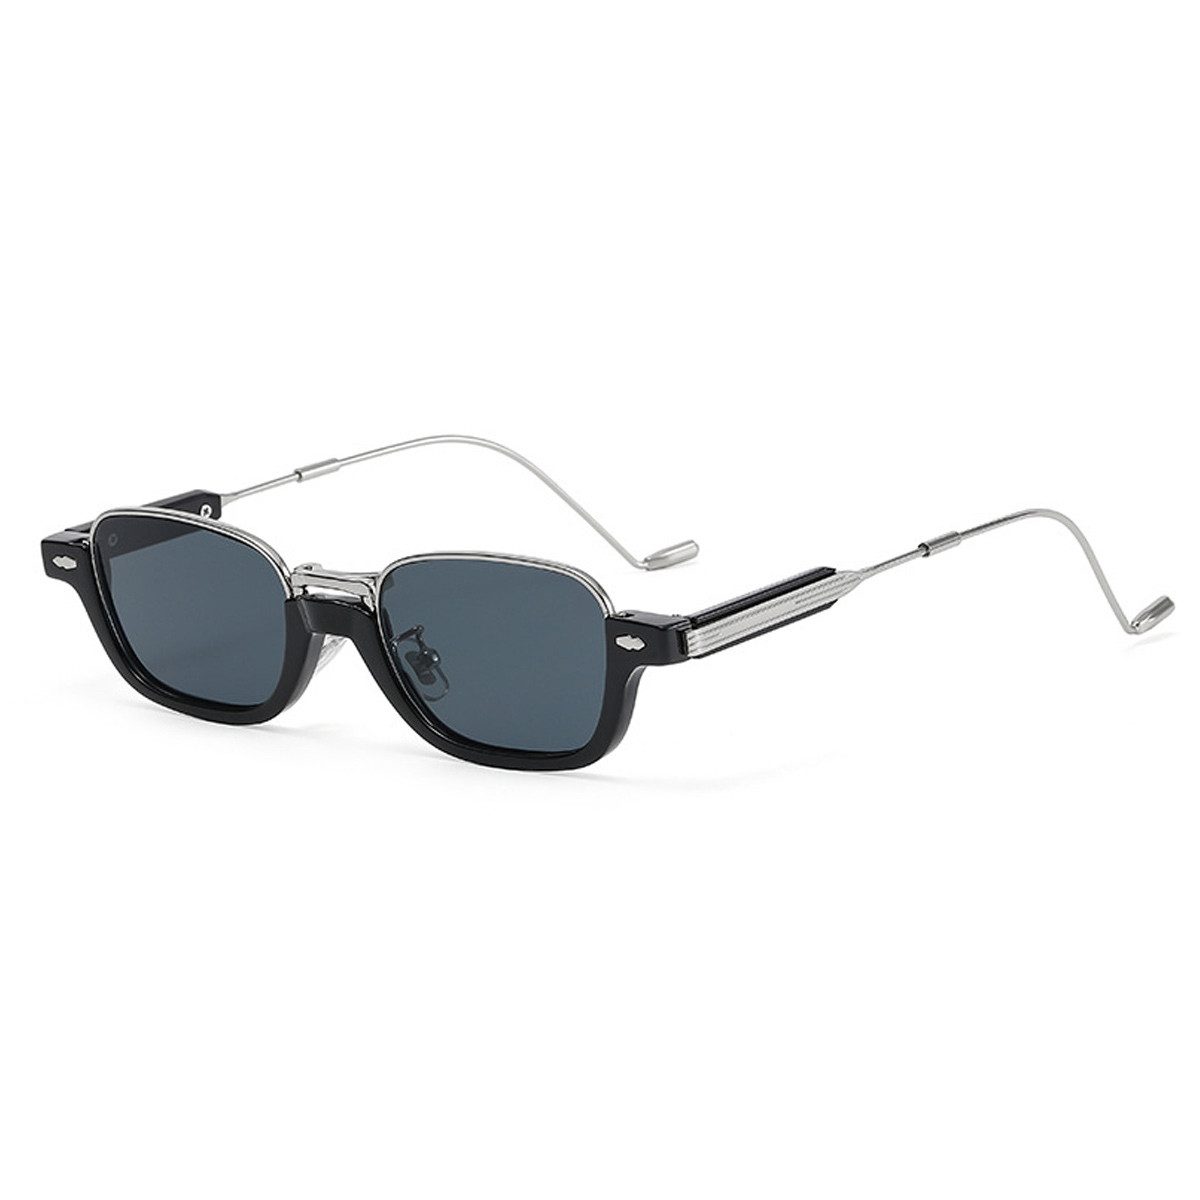 Rnemitery Sonnenbrille Vintage Sonnenbrille mit kleine Ovale Metall Rahmen für Männer Frauen